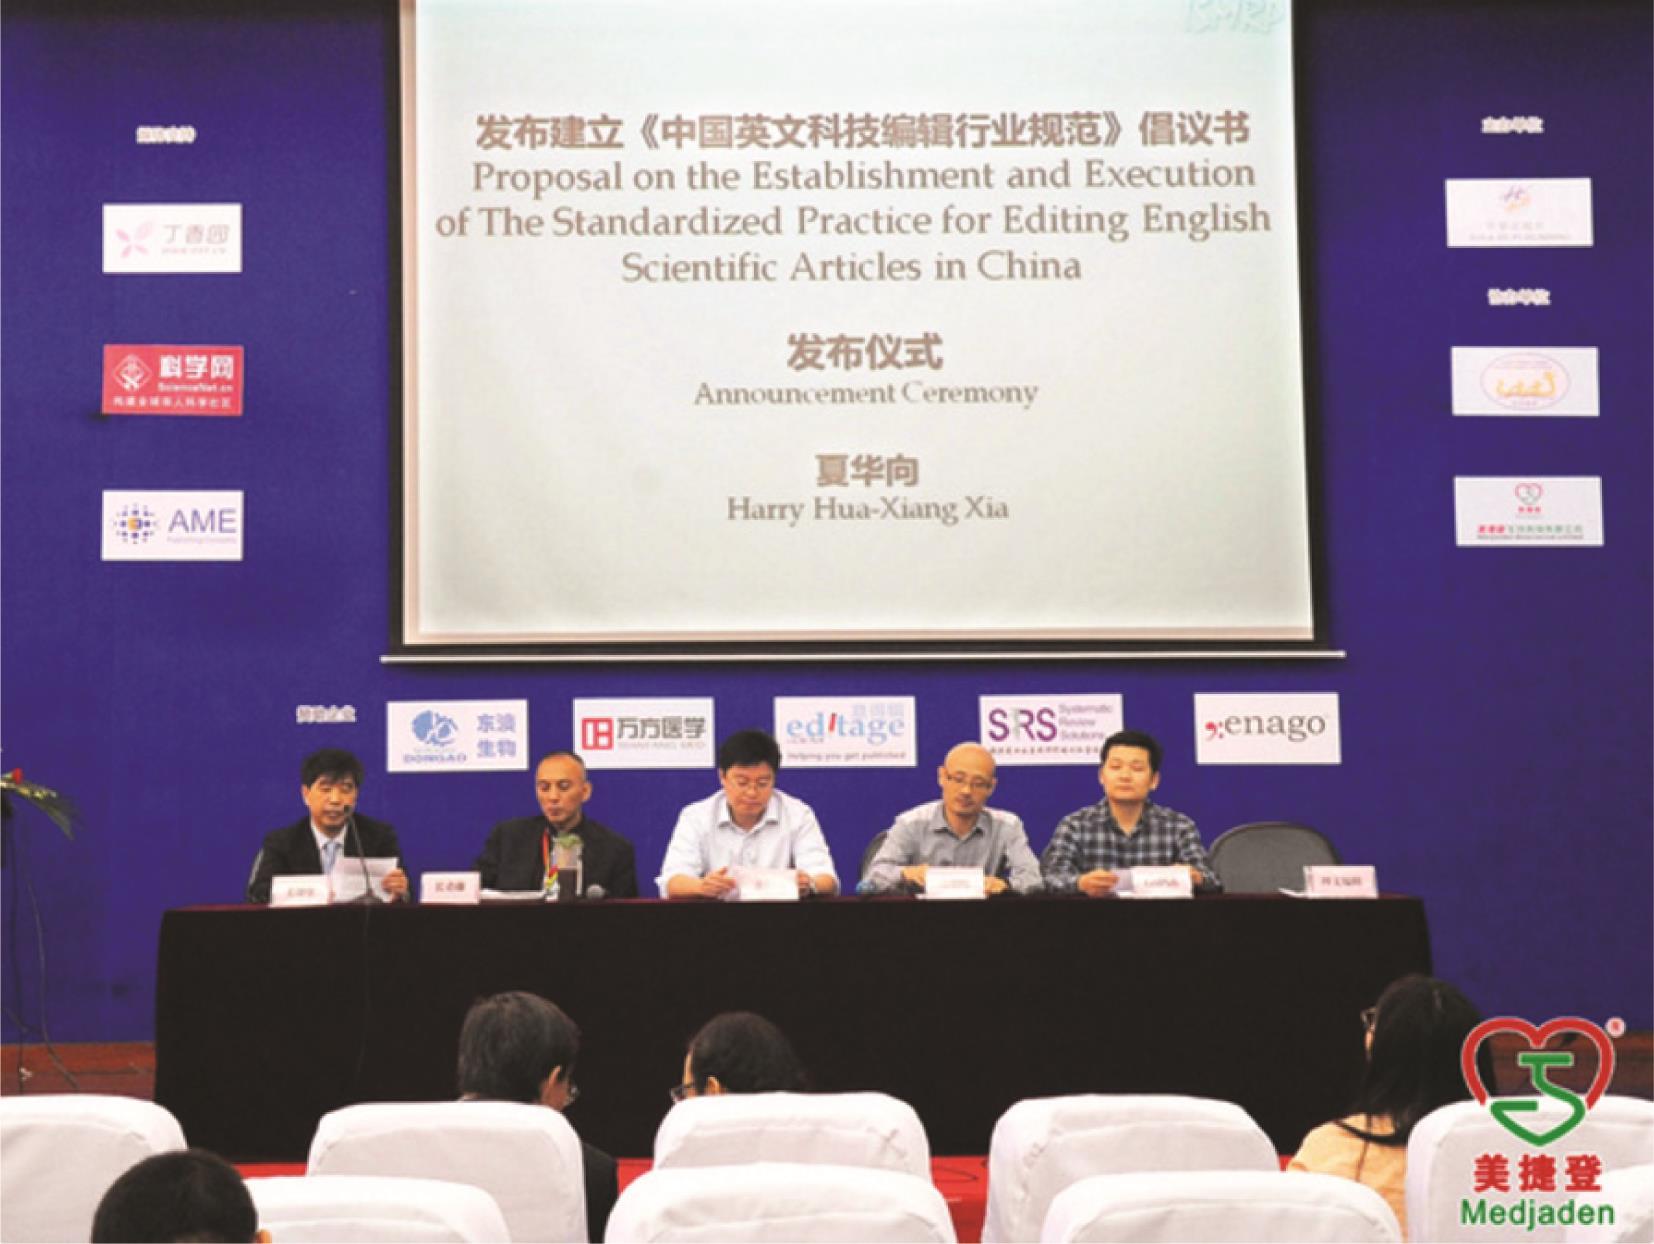 2015年10月18日，美捷登主席夏华向教授宣布成立由美捷登、长青藤、意得辑、理文编辑、LetPub、英论阁六家英文科技论文编辑服务公司组成的中国英文科技论文编辑联盟（The Alliance for Scientific Editing in china, ASEC），并宣读由这六家公司负责人签署的《中国英文科技编辑行业规范》的倡议书。